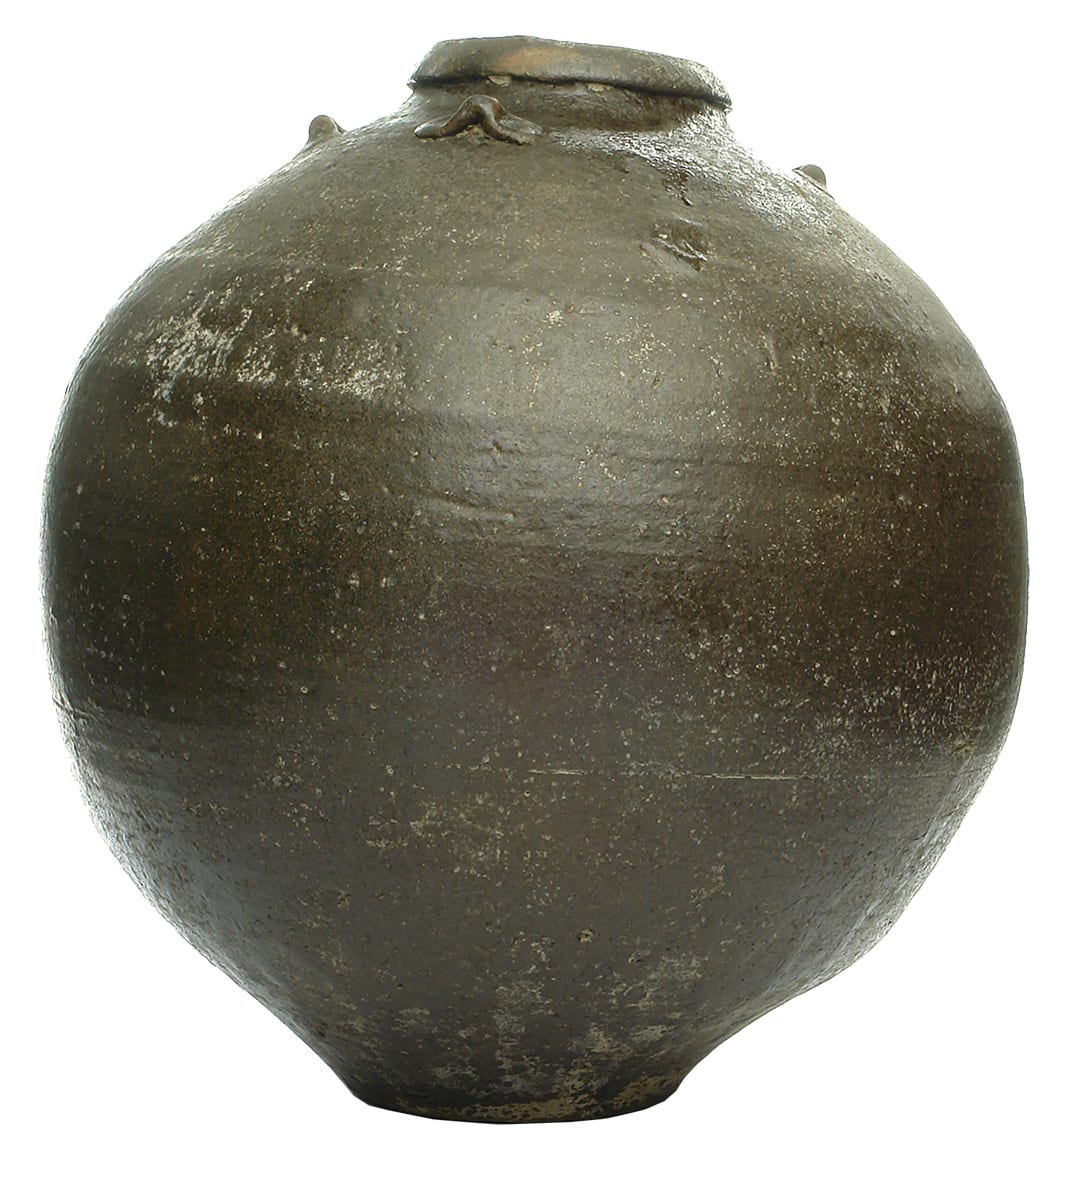 Chinese Ceramic Jar Antique